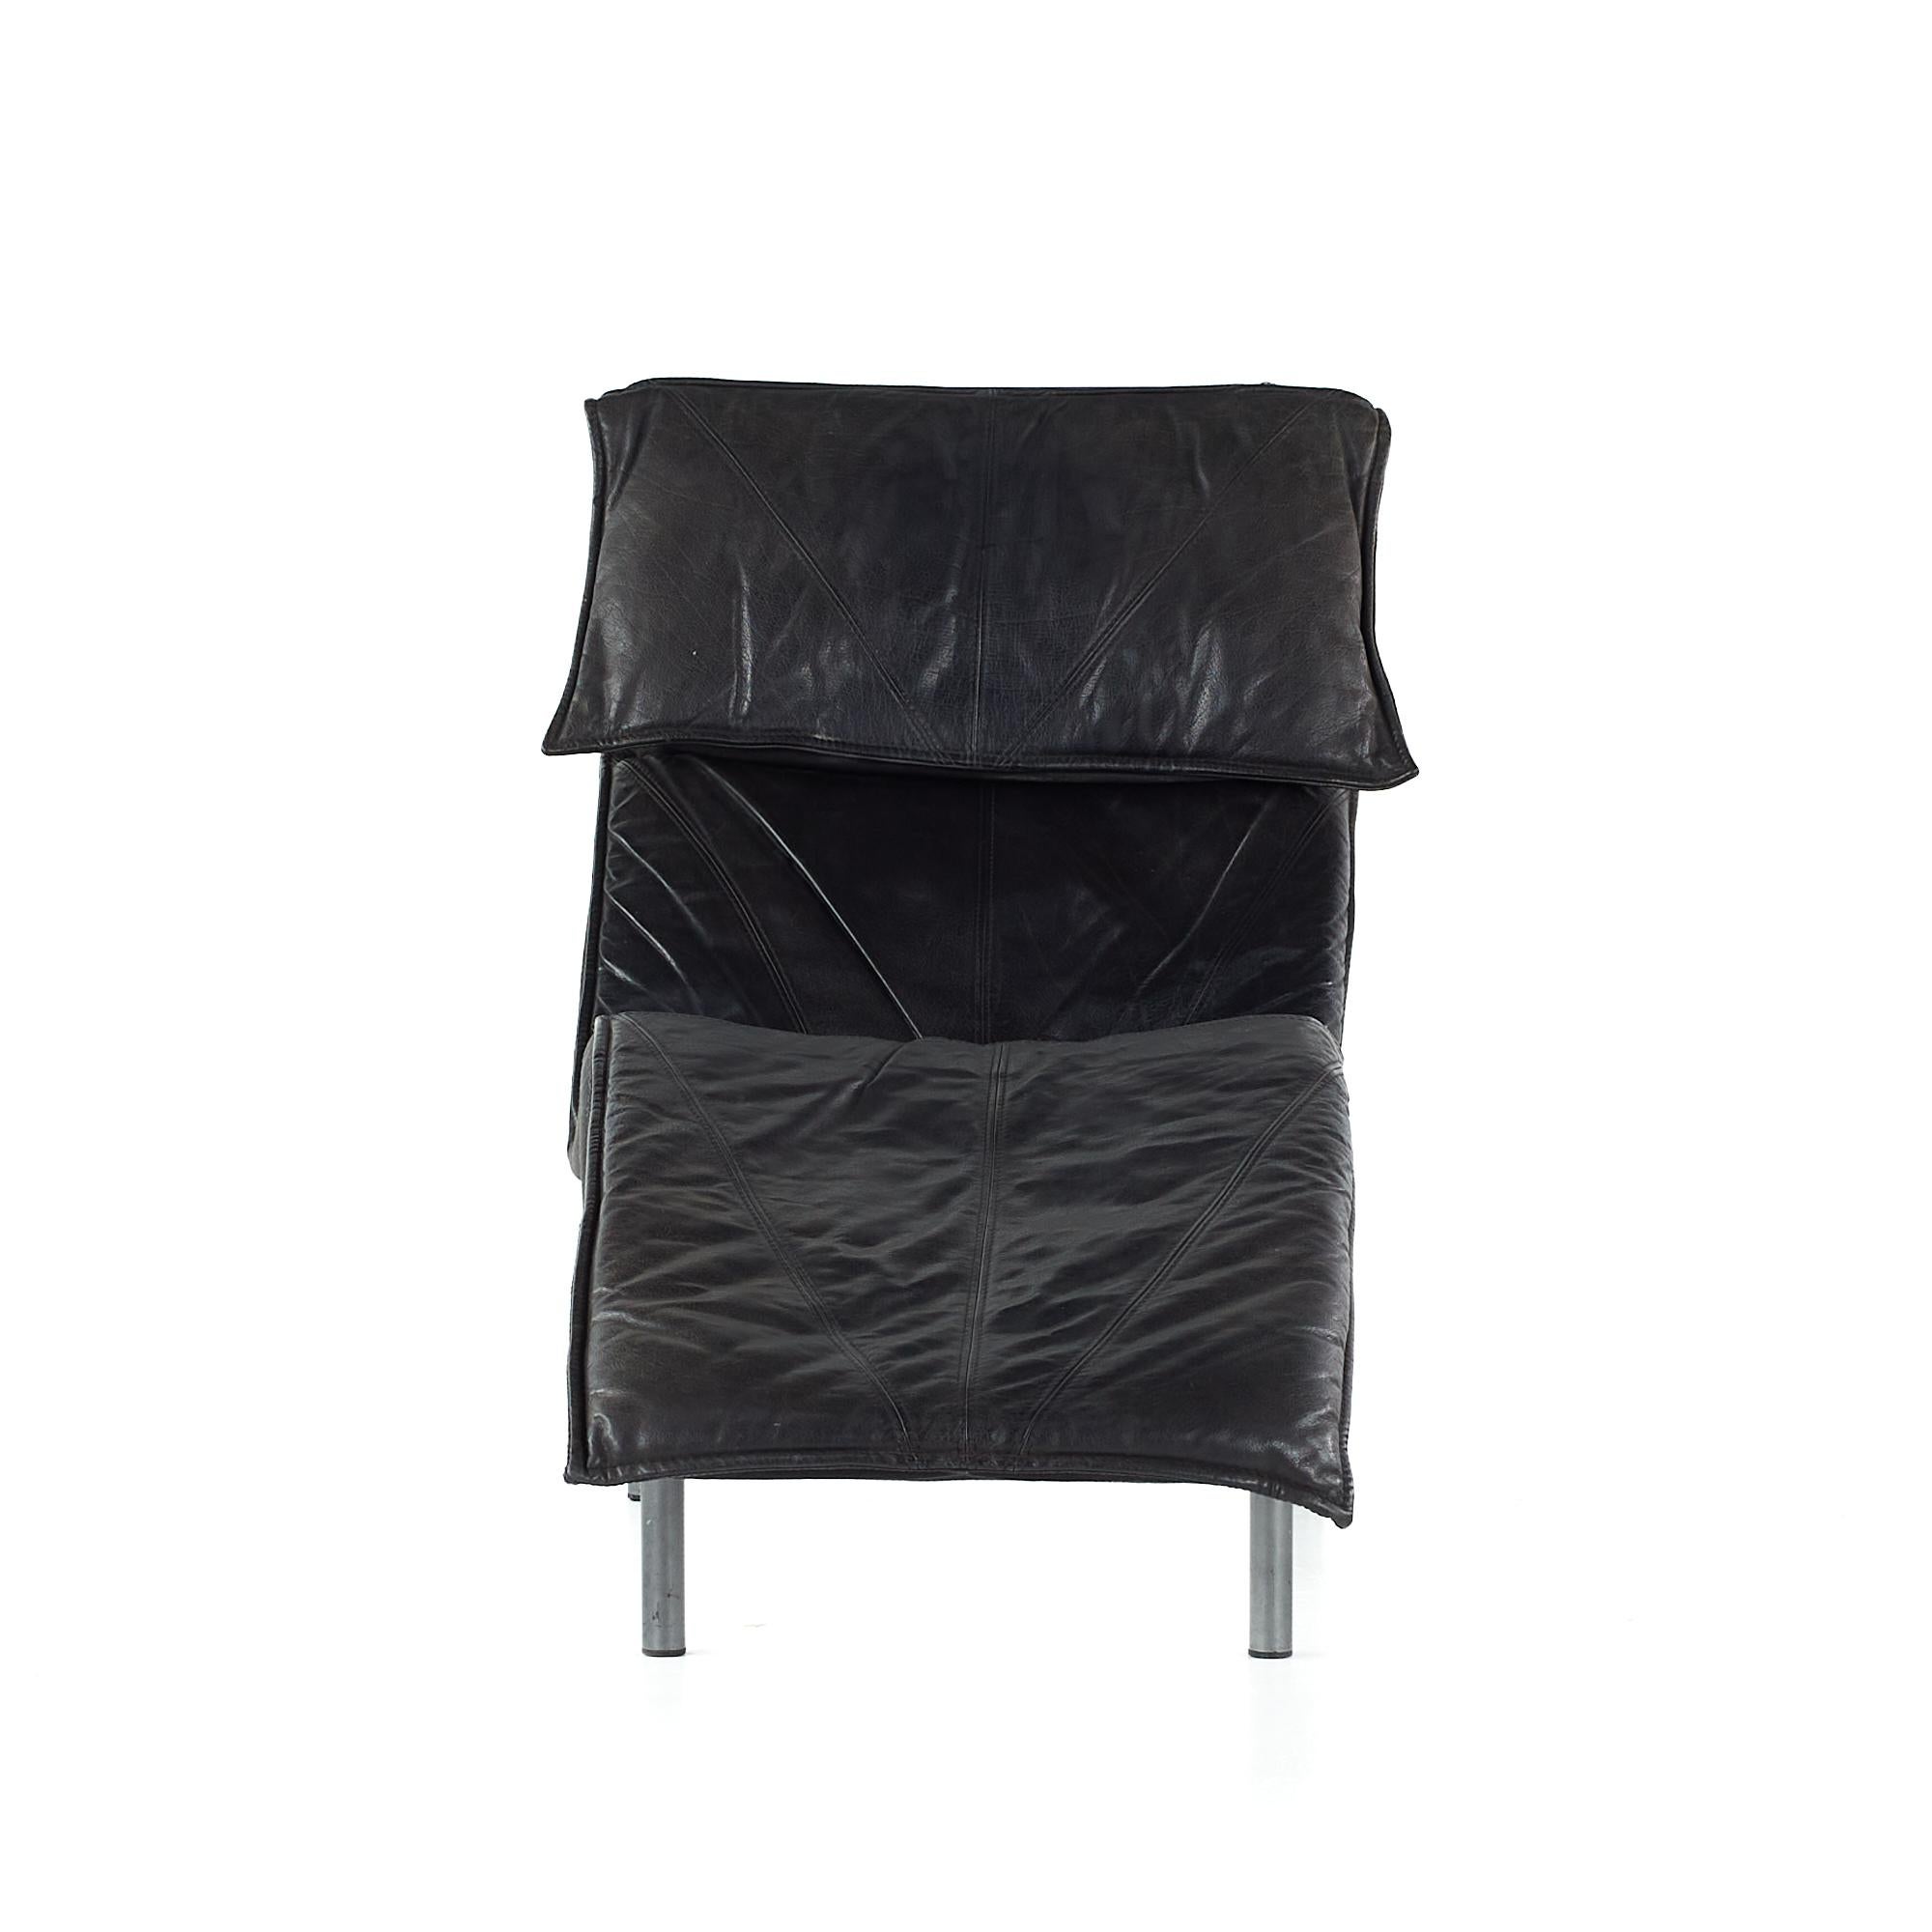 Early Tord Bjorklund for Ikea midcentury Chaise Lounge en cuir

Cette chaise mesure : 28 de large x 61 de profond x 37.5 de haut avec une hauteur d'assise de 14 pouces.

Tous les meubles peuvent être achetés dans ce que nous appelons un état